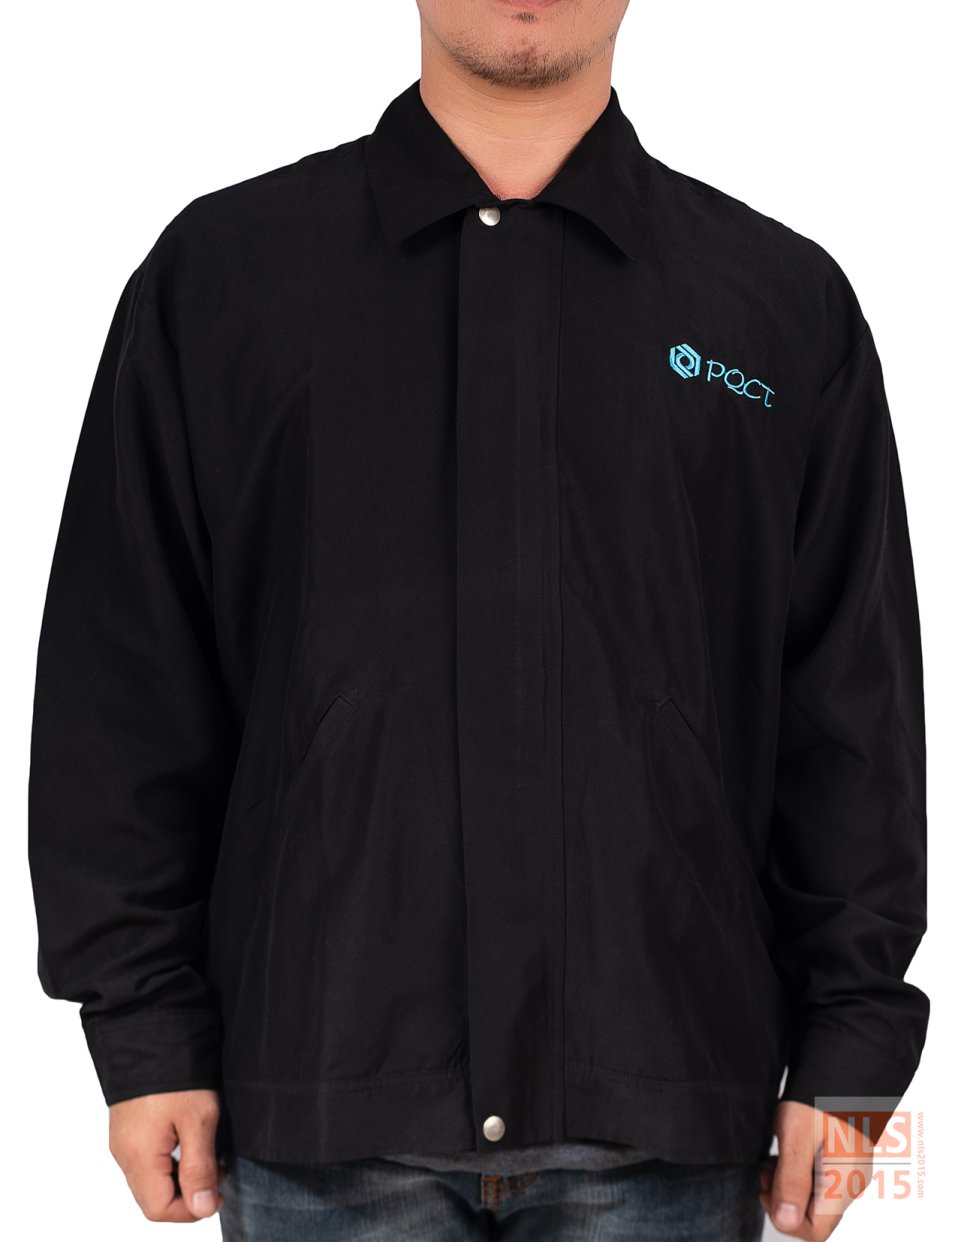 ตัวอย่างเสื้อแจ็คเก็ตพนักงานบริษัท PQCT / นลินสิริรับผลิตเสื้อแจ็คเก็ต ยูนิฟอร์มพนักงาน พร้อมปักโลโก้รูปที่ 